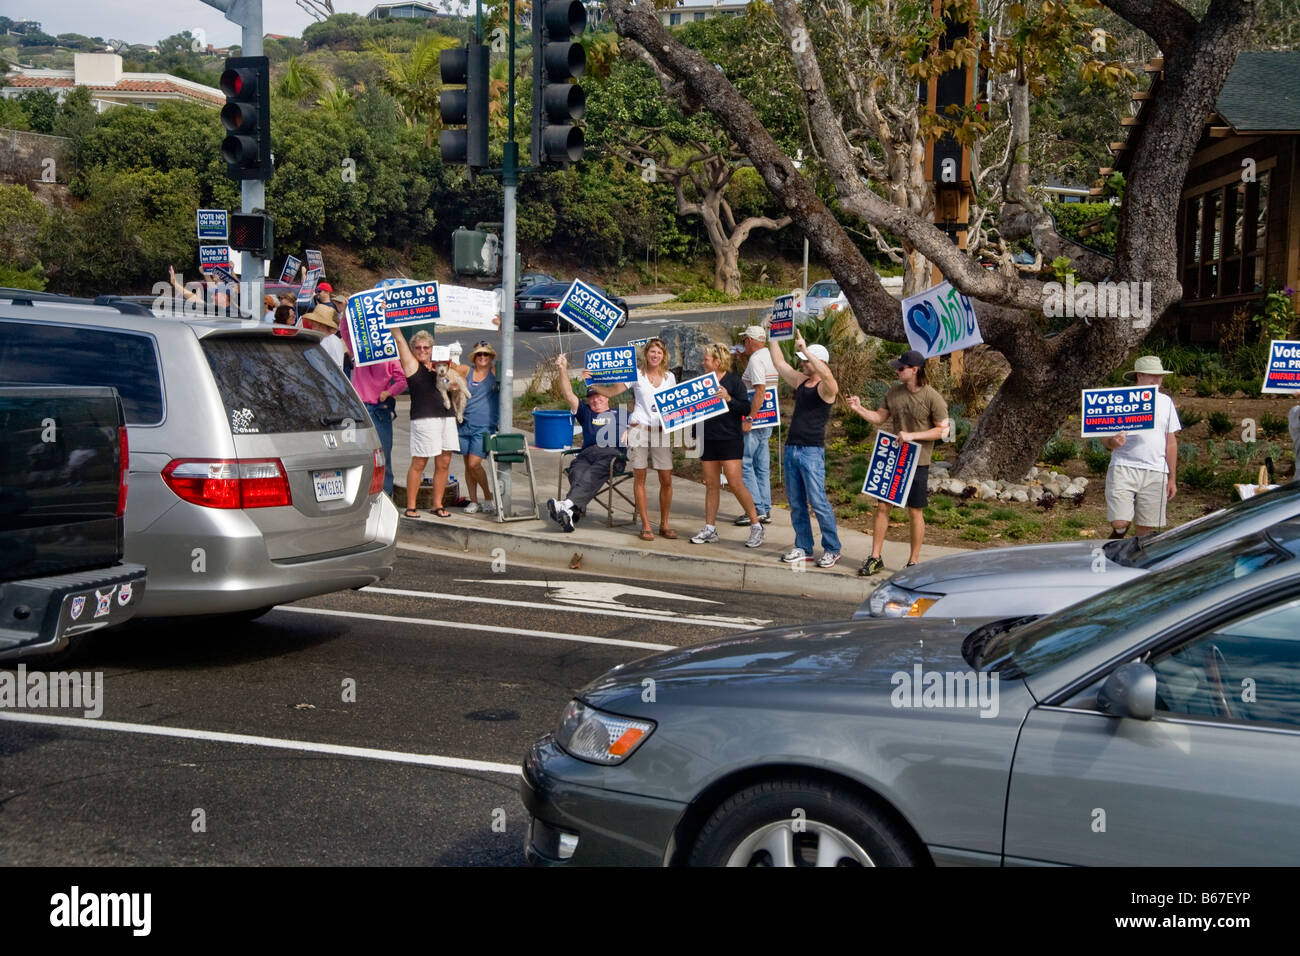 Les manifestants protestent contre la proposition de vote de l'état à l'Autoroute de la côte pacifique dans la région de Laguna Niguel, CA, USA Banque D'Images